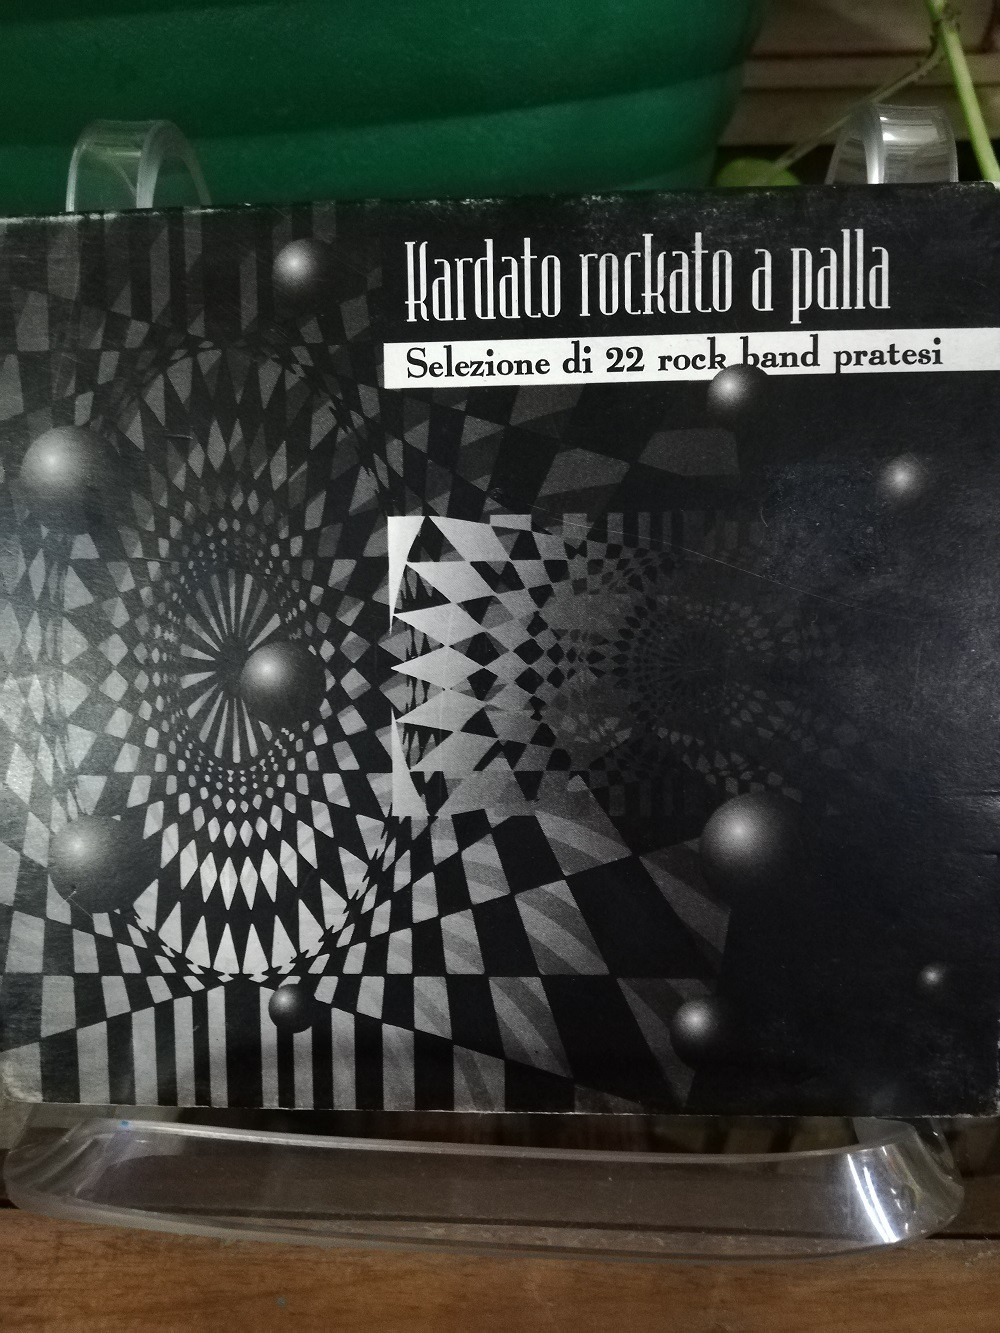 Imagen CD KARDATO ROCKATO A PALLA - SELEZIONE DI 22 ROCK BAND PRATESI